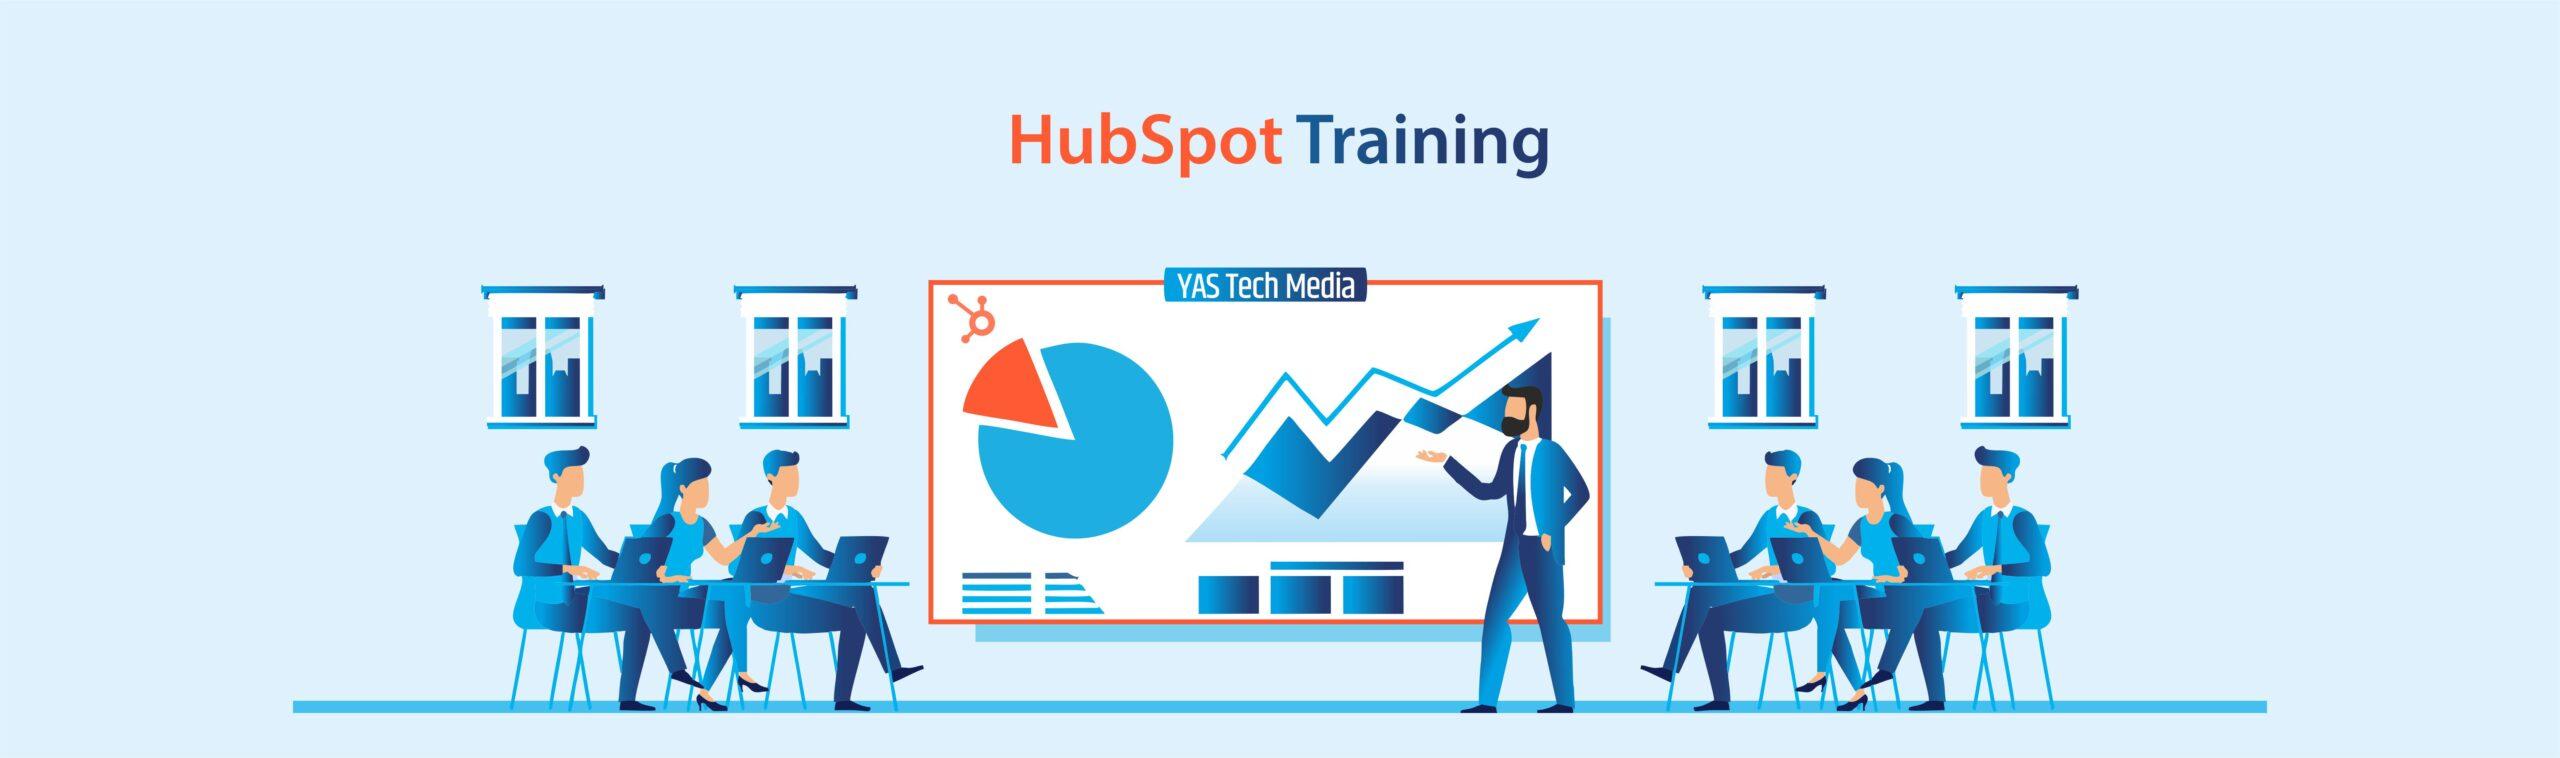 HubSpot Training